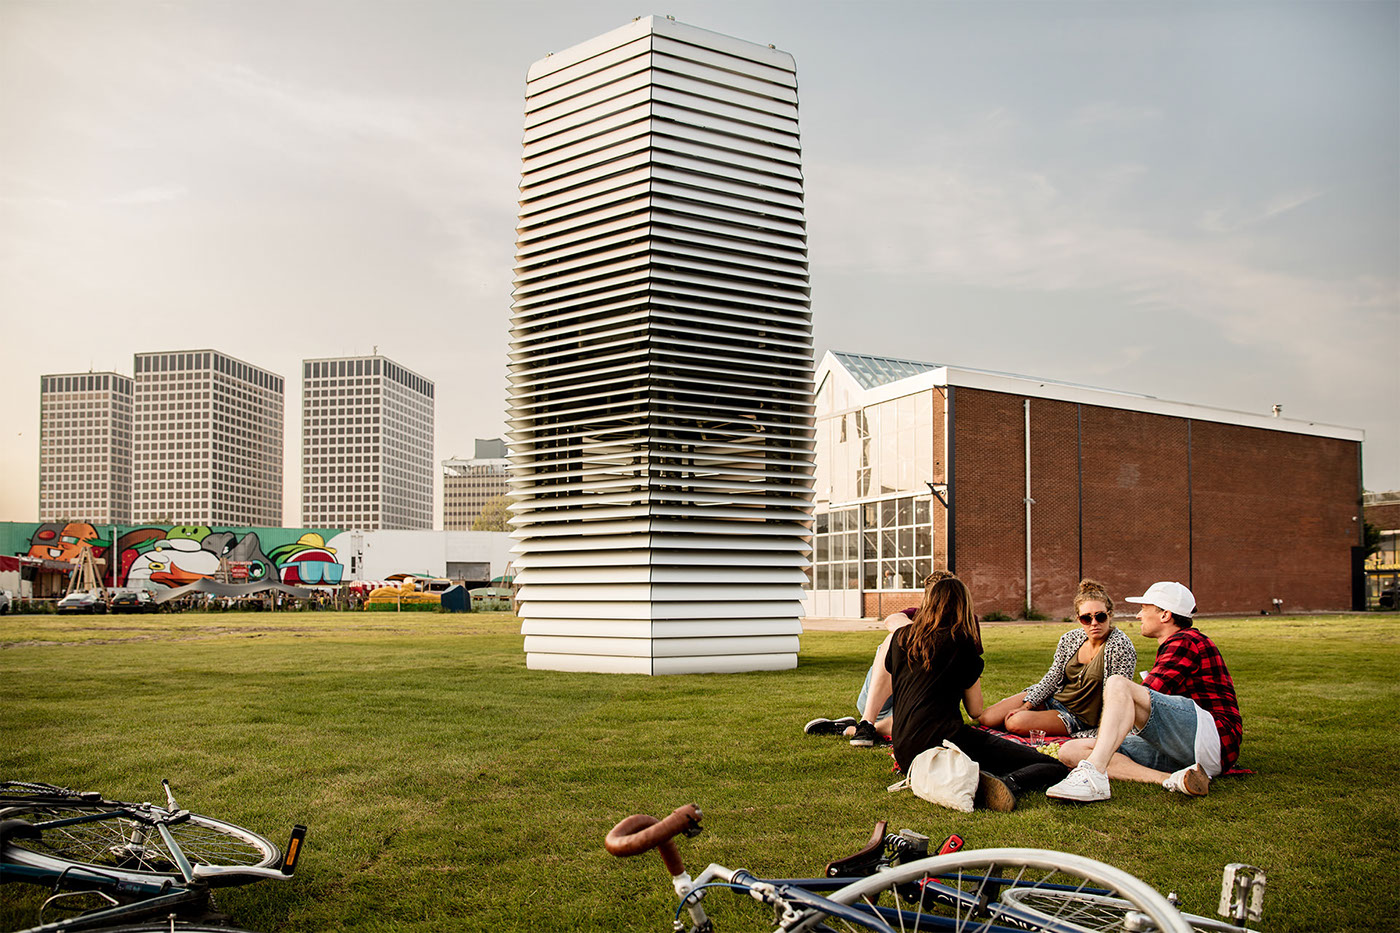 studio roosegaarde smog free tower daan roosegaarde Rotterdam crowdfunding ring Sustainability